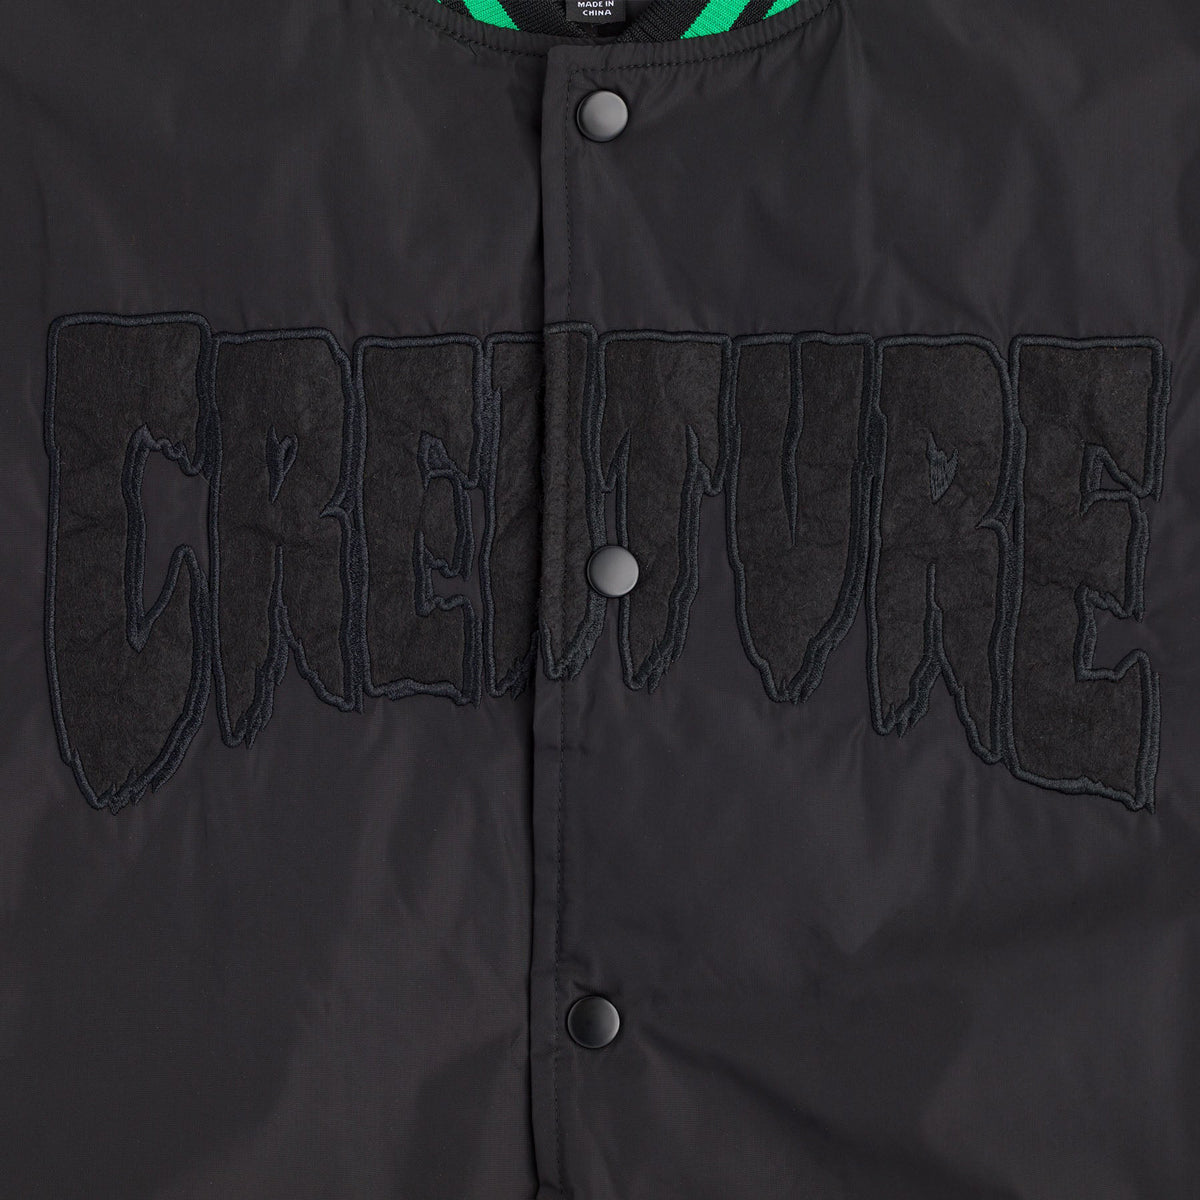 Creature Meat Head Too Stadium Jacket - Black image 4